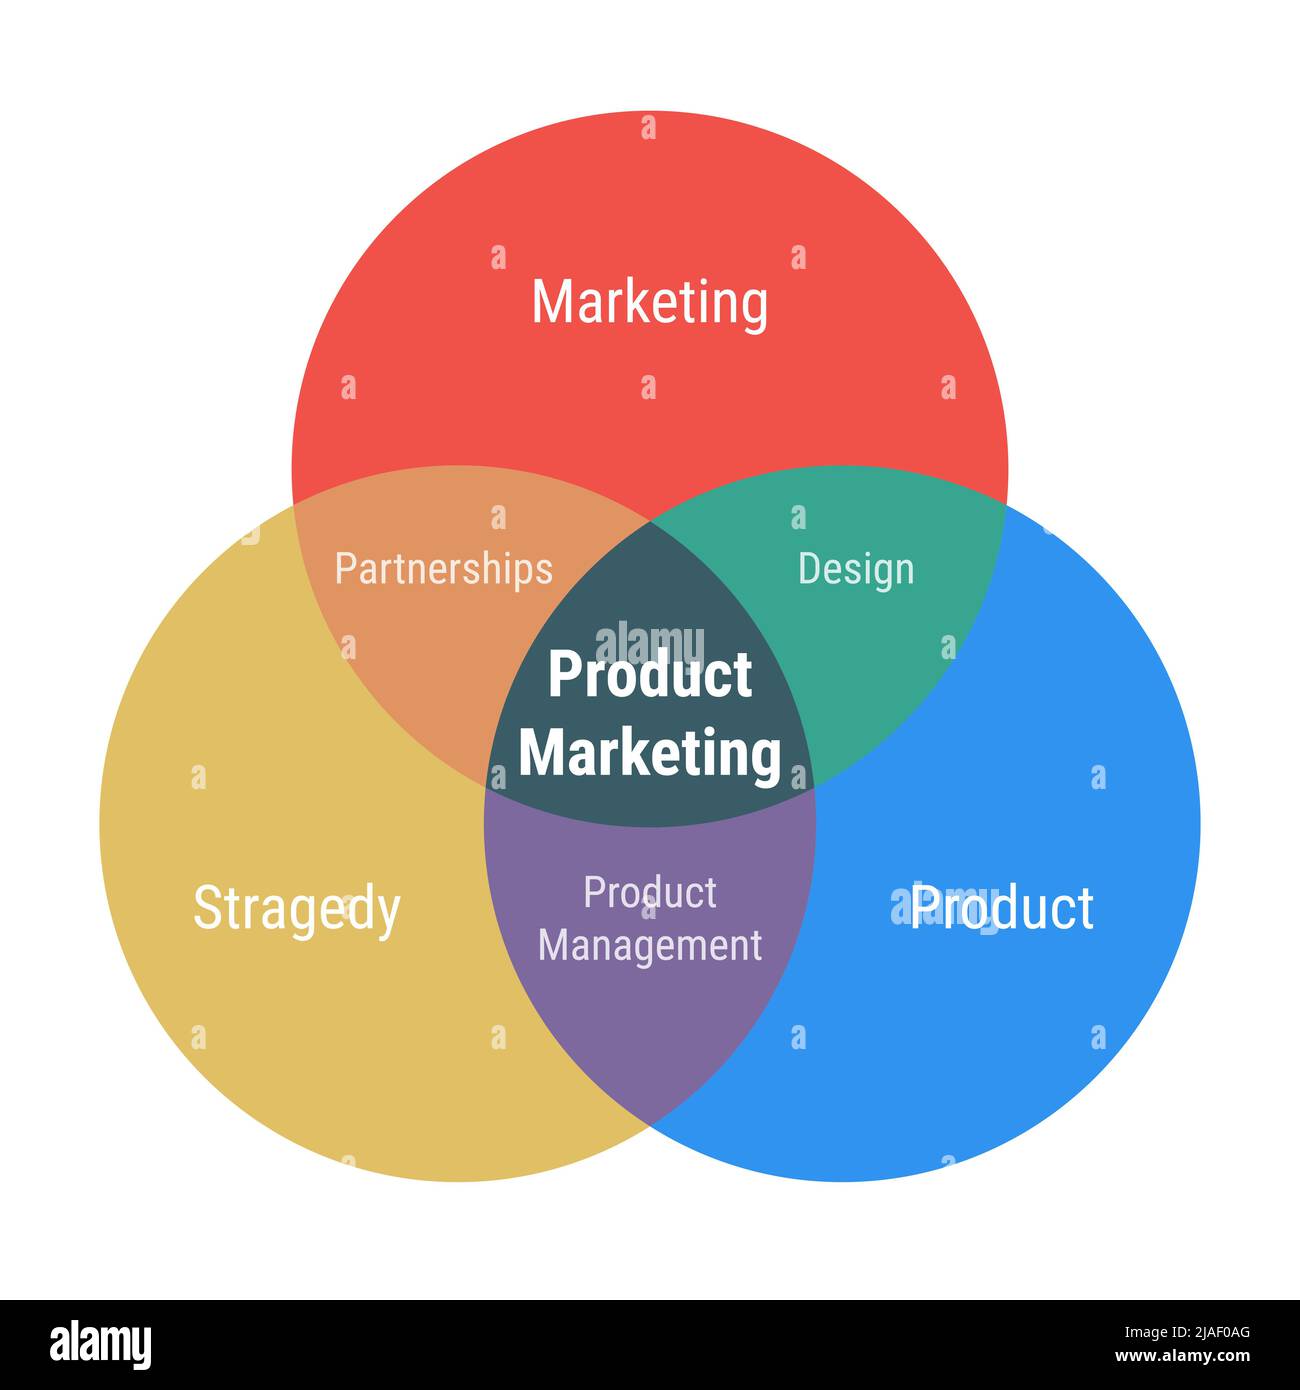 Produktmarketing venn-Diagramm 3 überlappende Kreise. Marketing-, Produkt- und Strategieteile. Produktmanagement, Partnersip und Design. Flach gestalttes Ye Stock Vektor